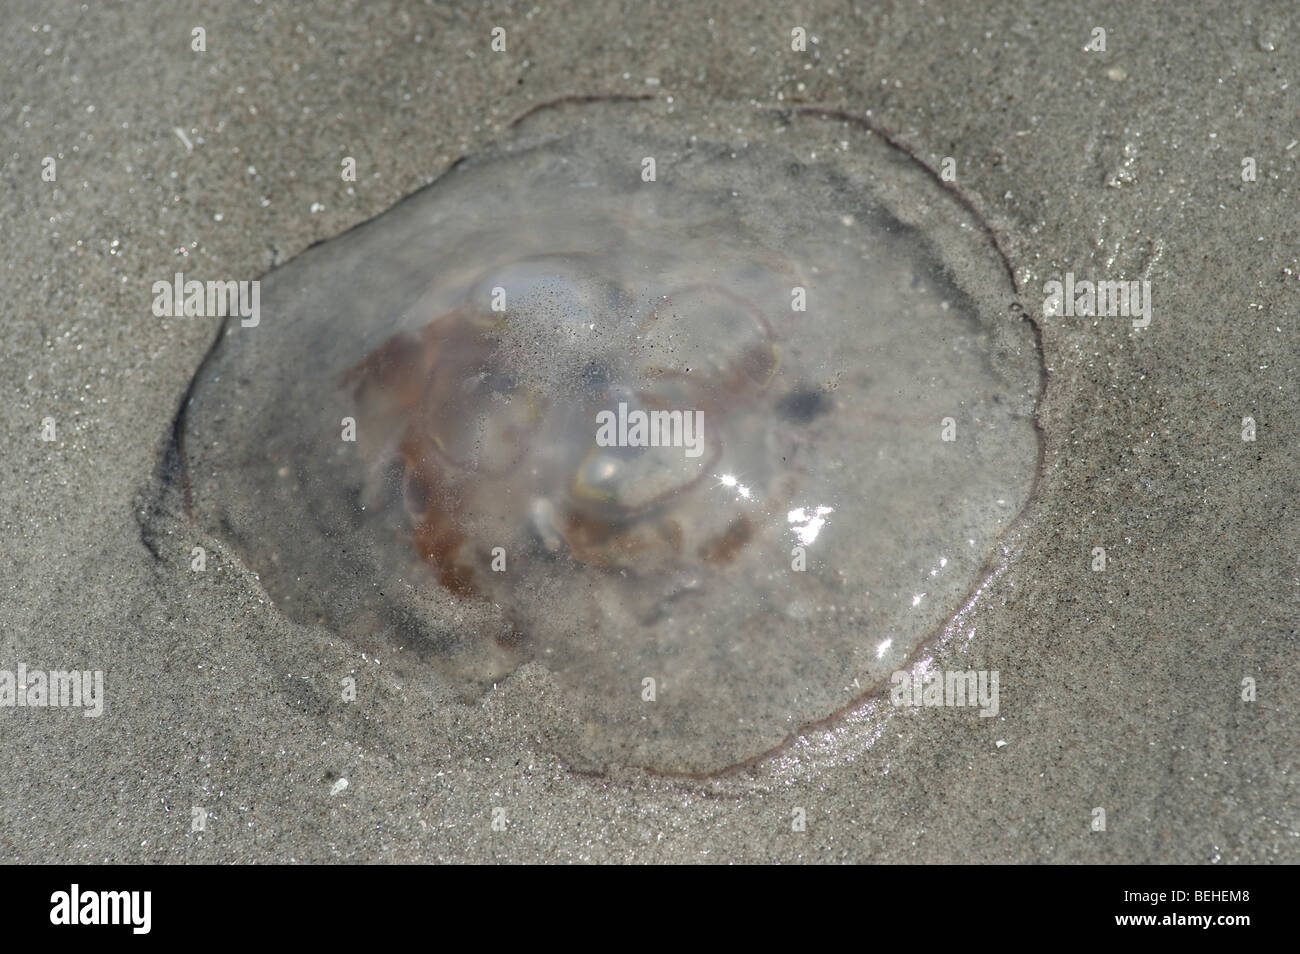 Moon jellyfish, Aurelia aurita, on beach Stock Photo